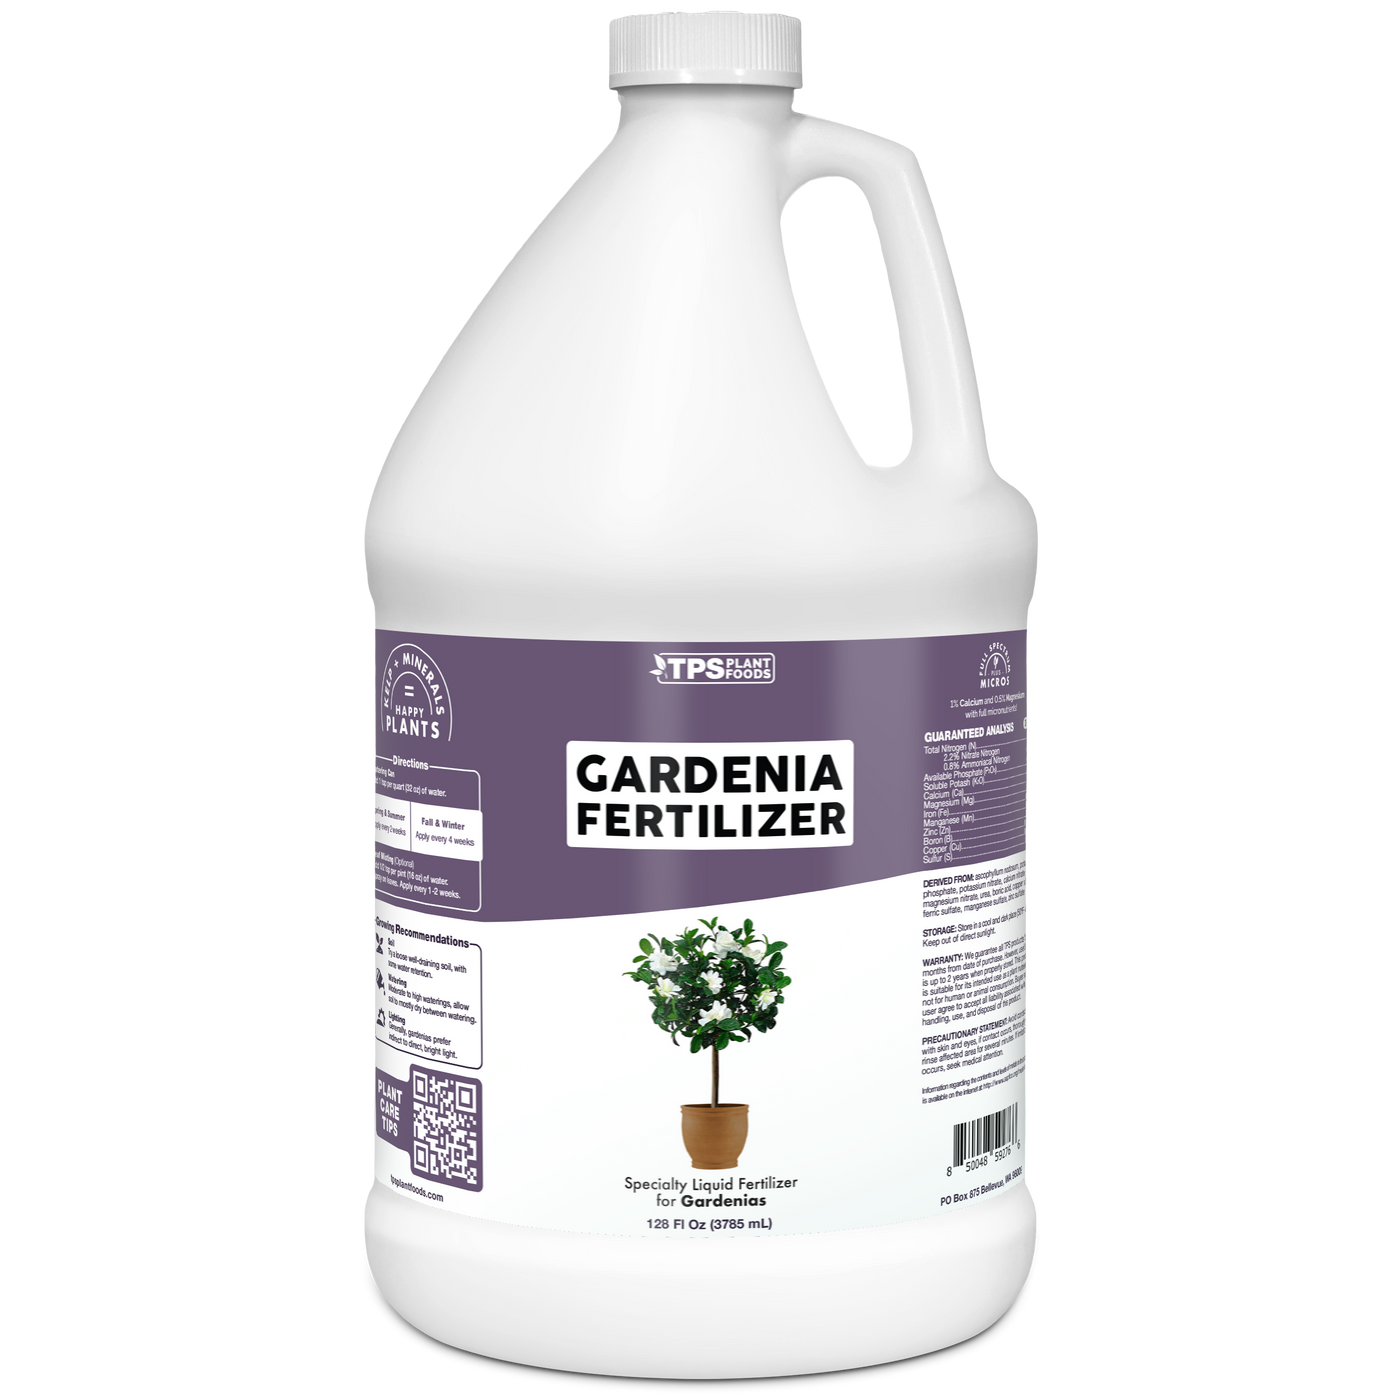 Gardenia Fertilizer